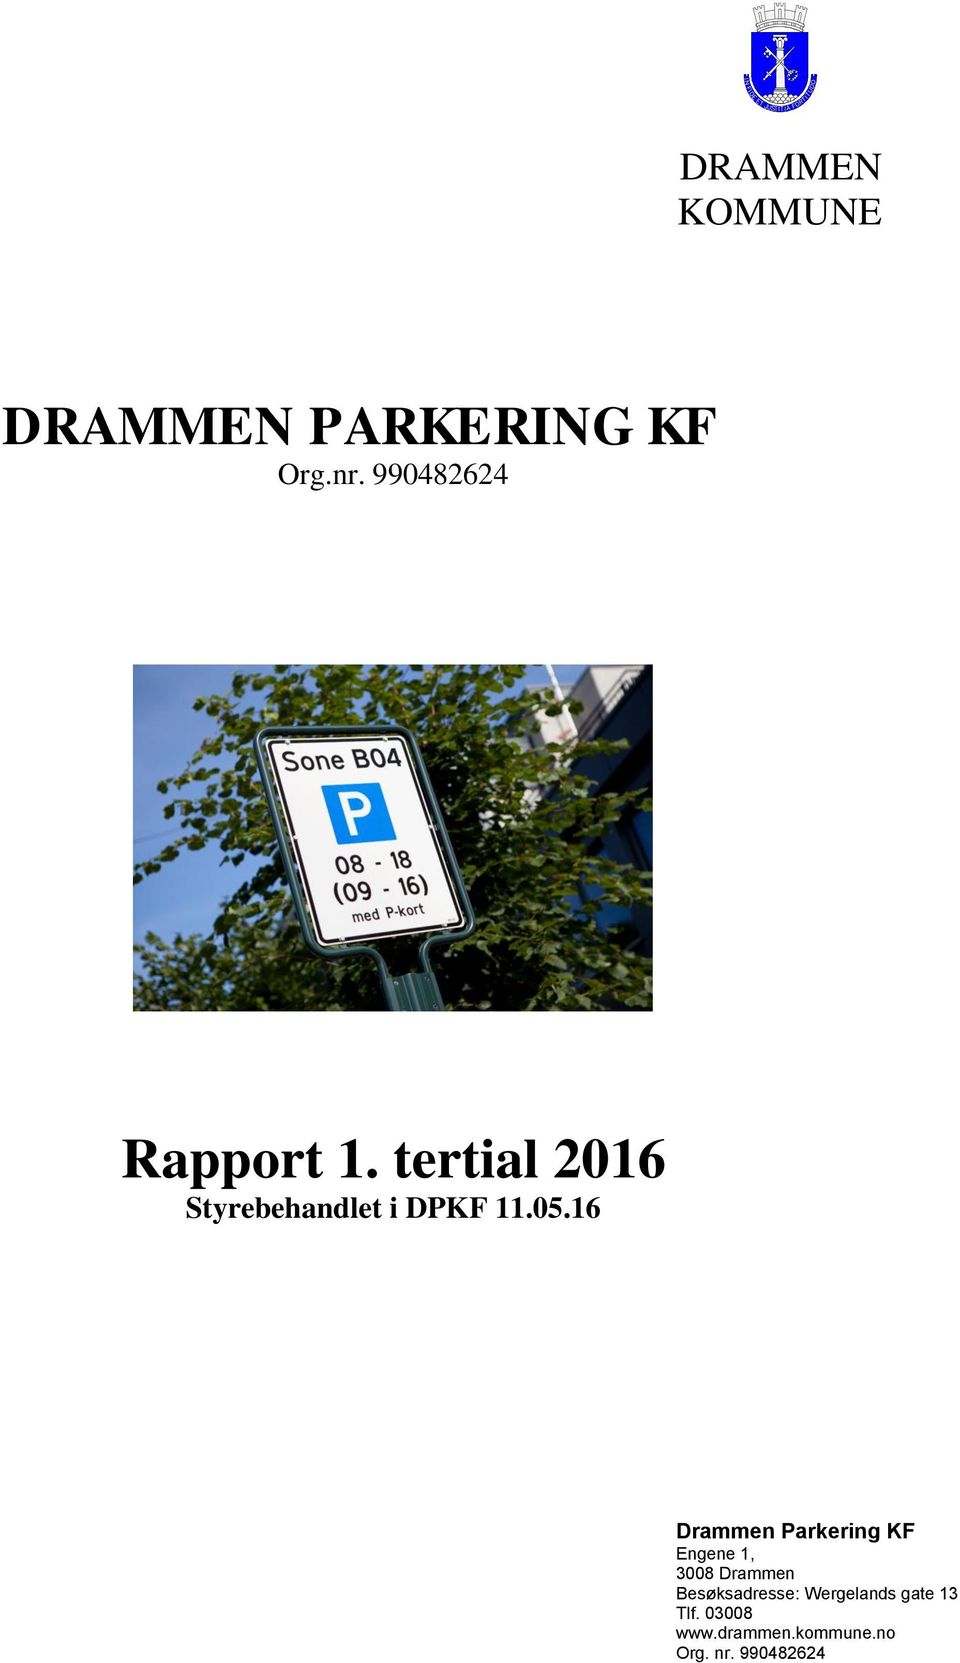 05.16 Drammen Parkering KF Engene 1, 3008 Drammen